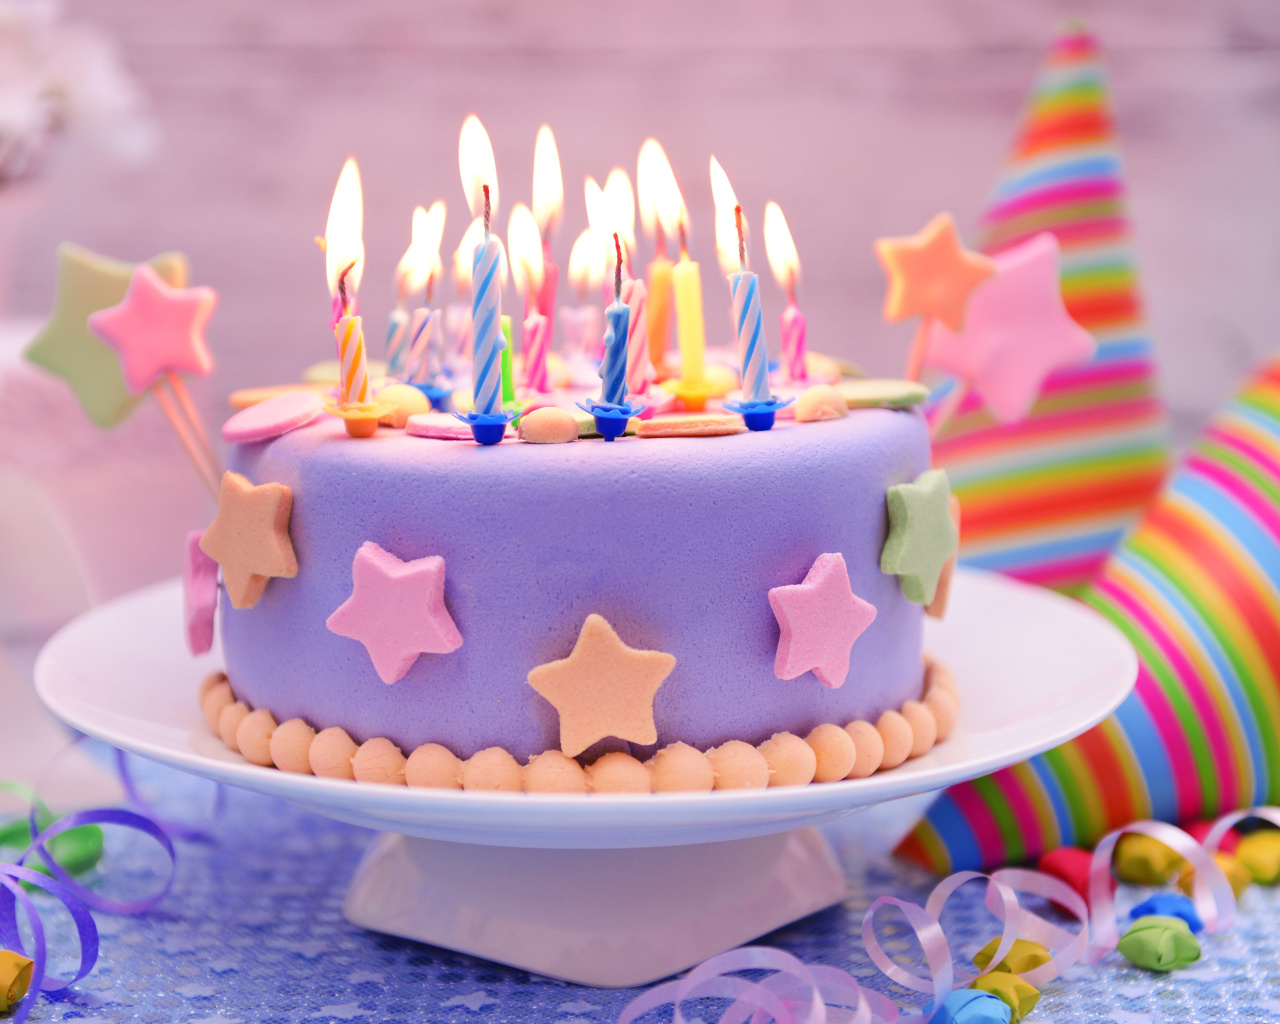 Обои Happy Birthday Cake 1280x1024